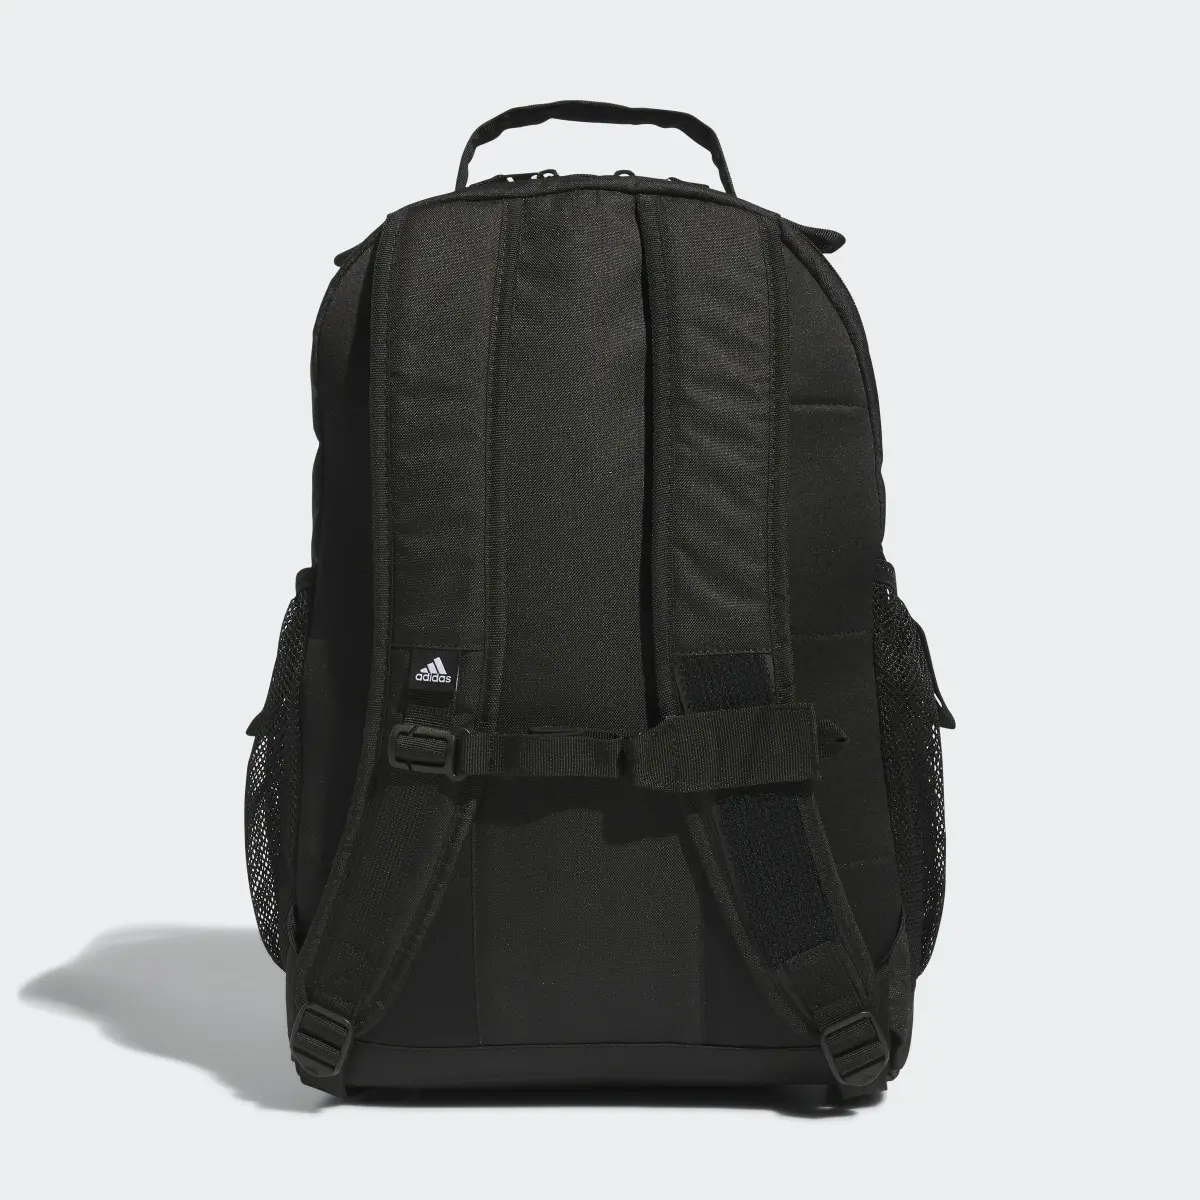 Adidas Adaptive Backpack. 3